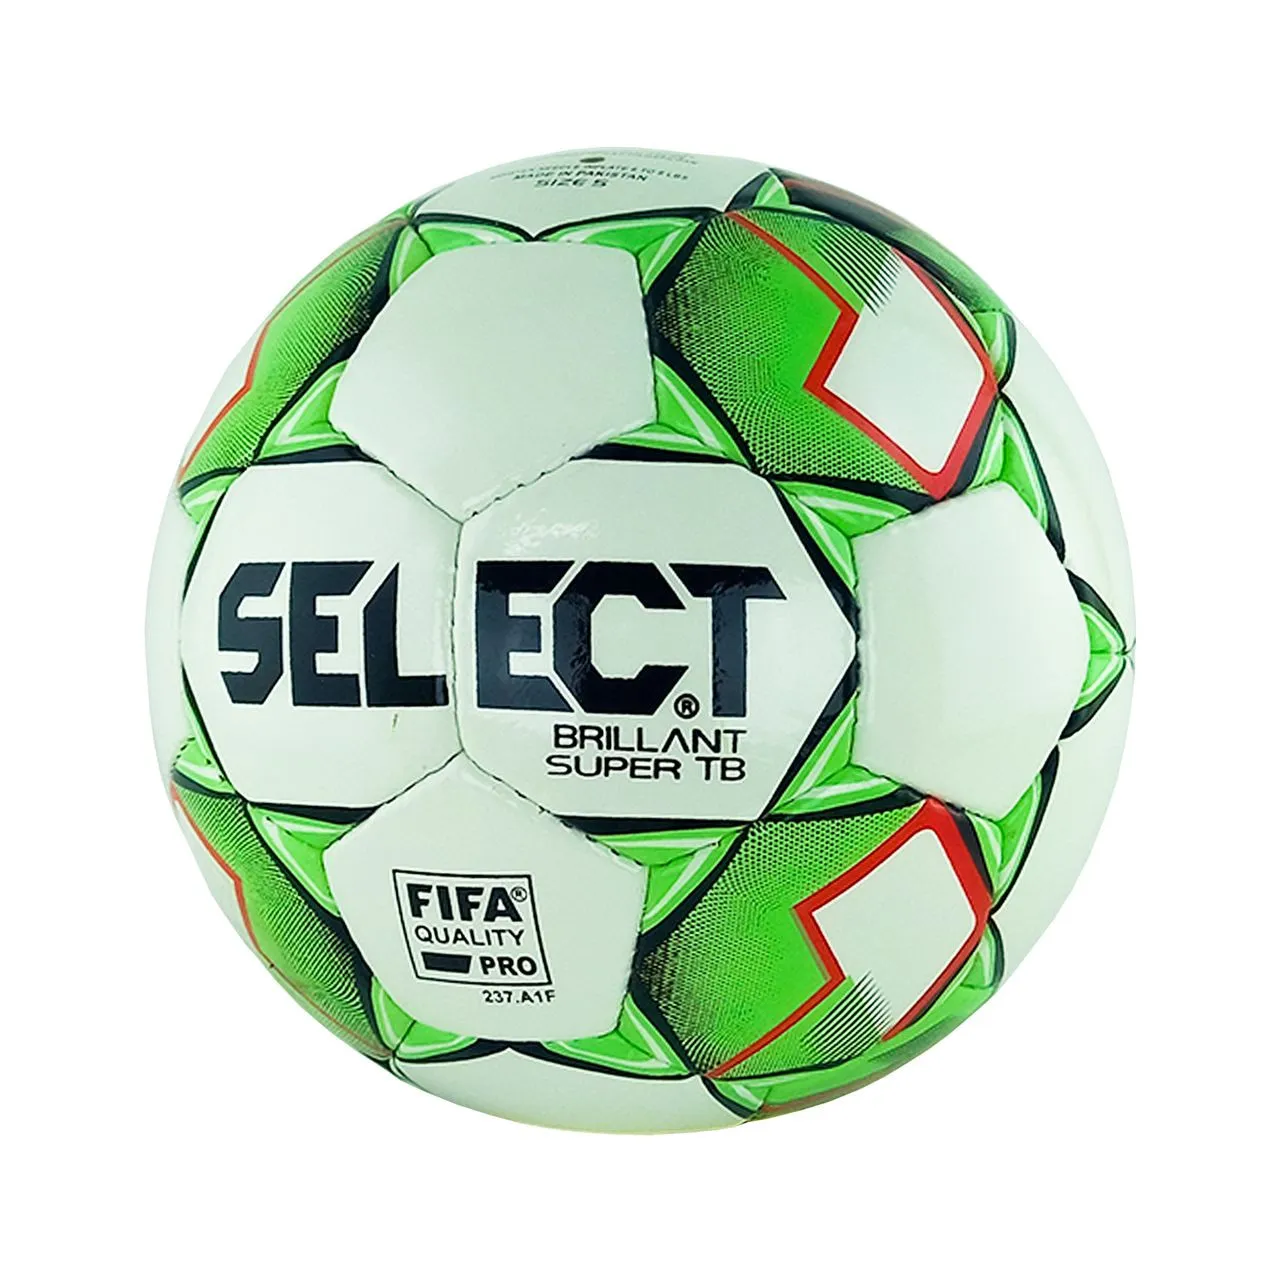 Myach futbol'nyy Select Super Brilliant TB
#1